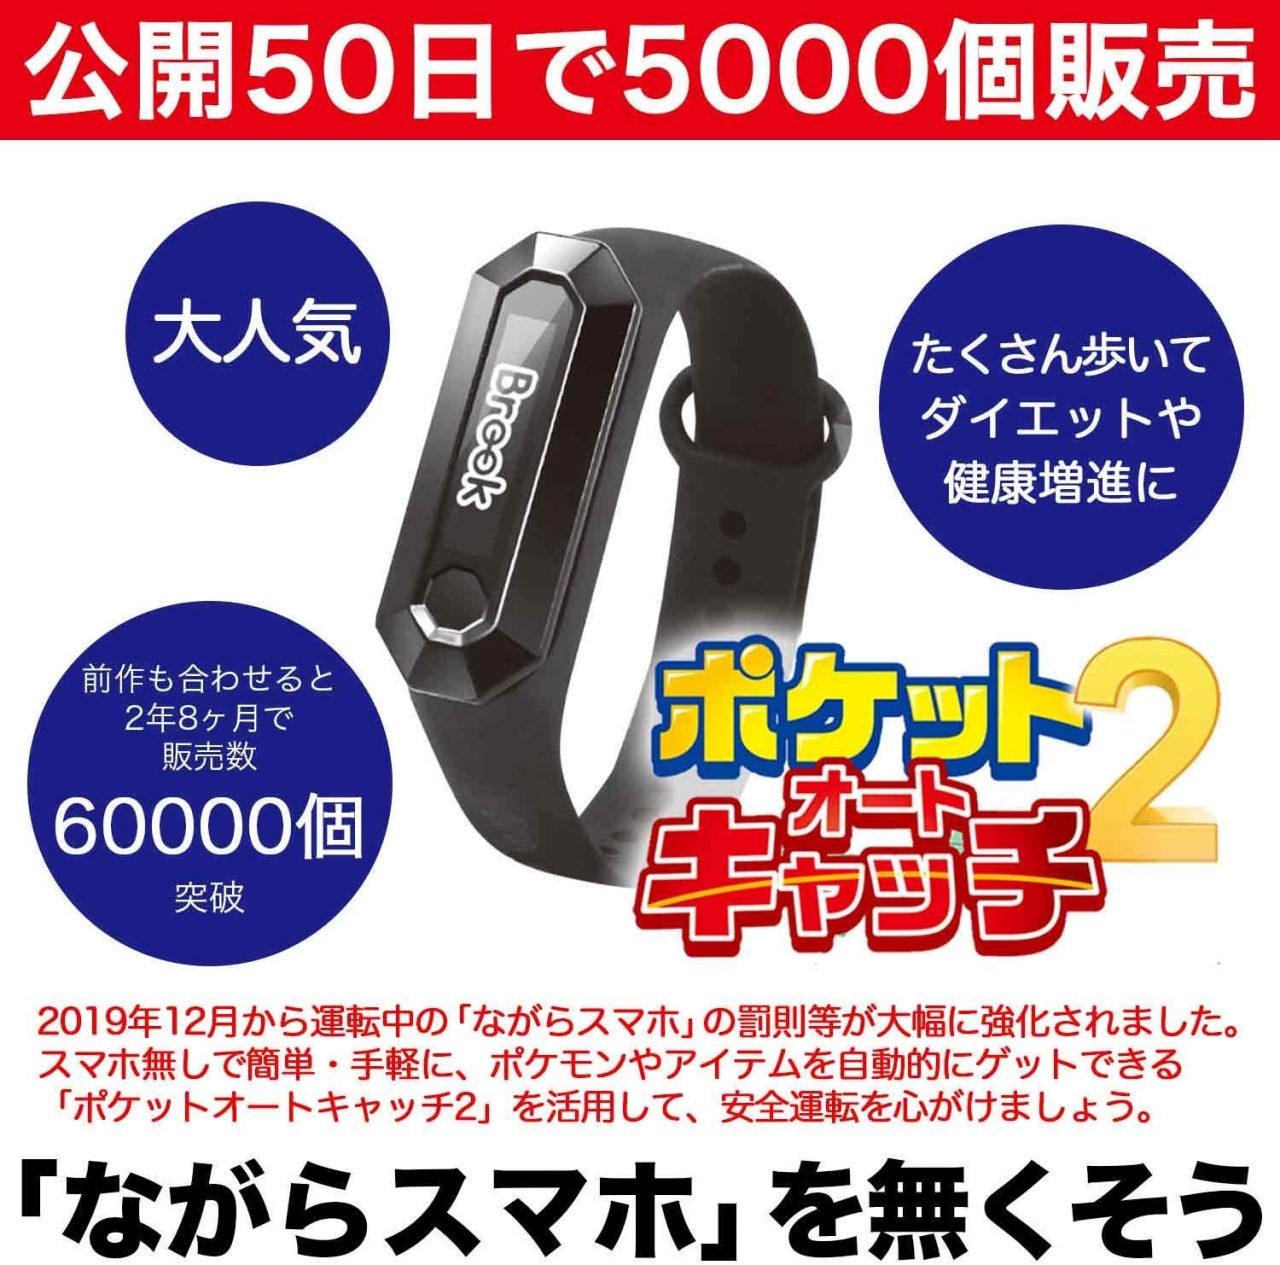 『ポケモンGO』究極ツール「ポケットオートキャッチ2」が再販売開始！2週間で販売台数2,000台突破！